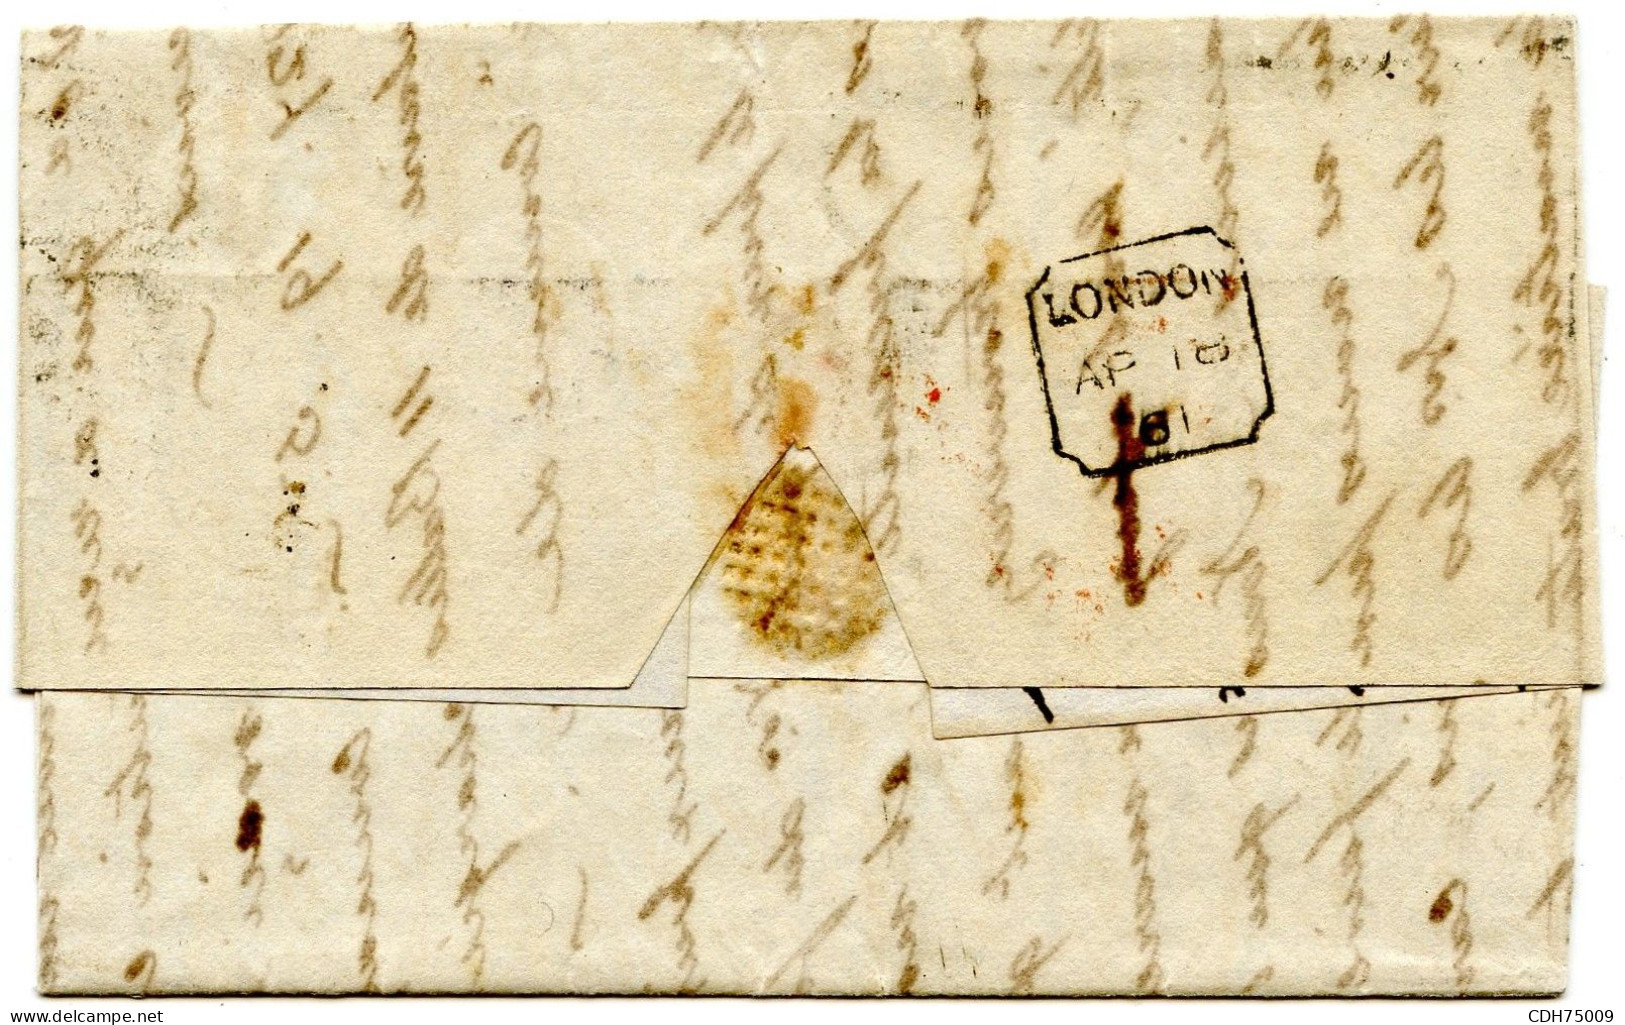 GRANDE BRETAGNE - 6 PX2 SUR LETTRE DE LONDRES POUR L'ESPAGNE, 1861 - Cartas & Documentos